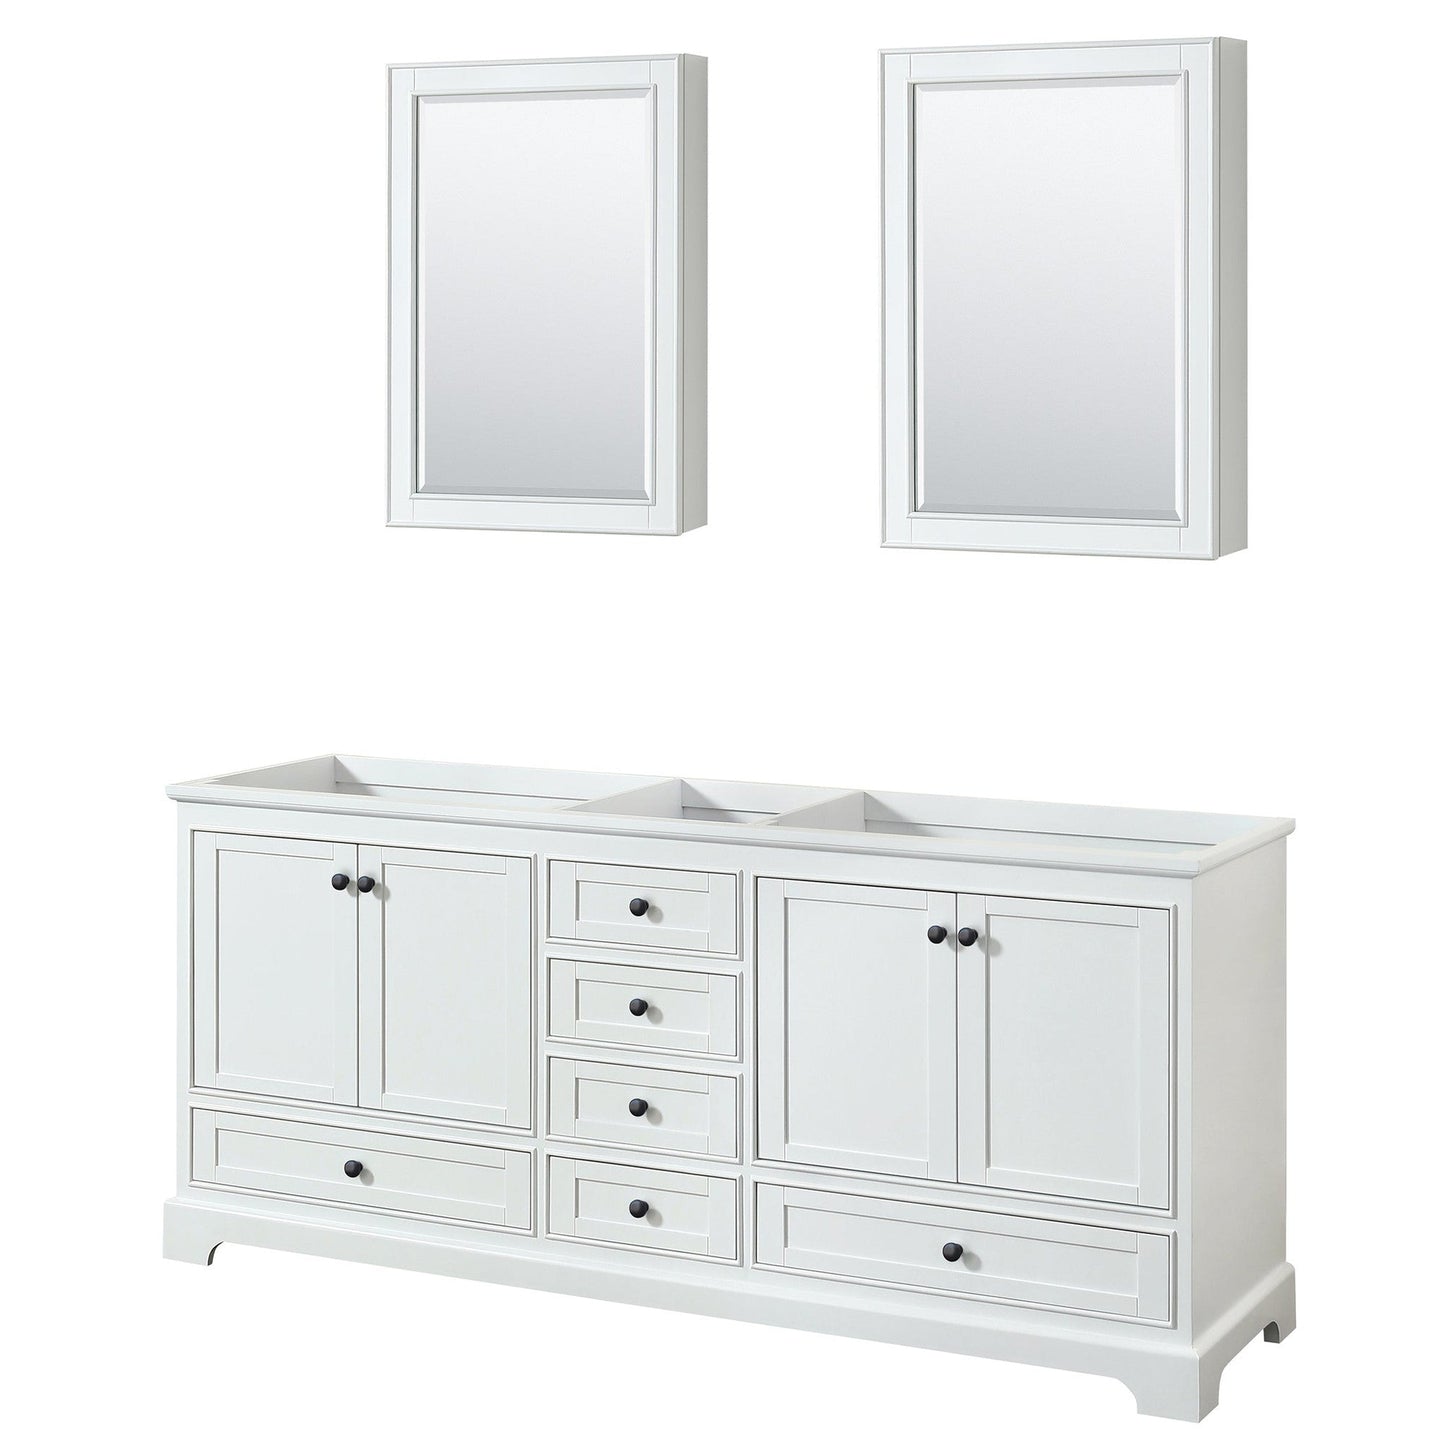 Deborah 80" Double Bathroom Vanity in White, No Countertop, No Sinks, Matte Black Trim, Medicine Cabinets